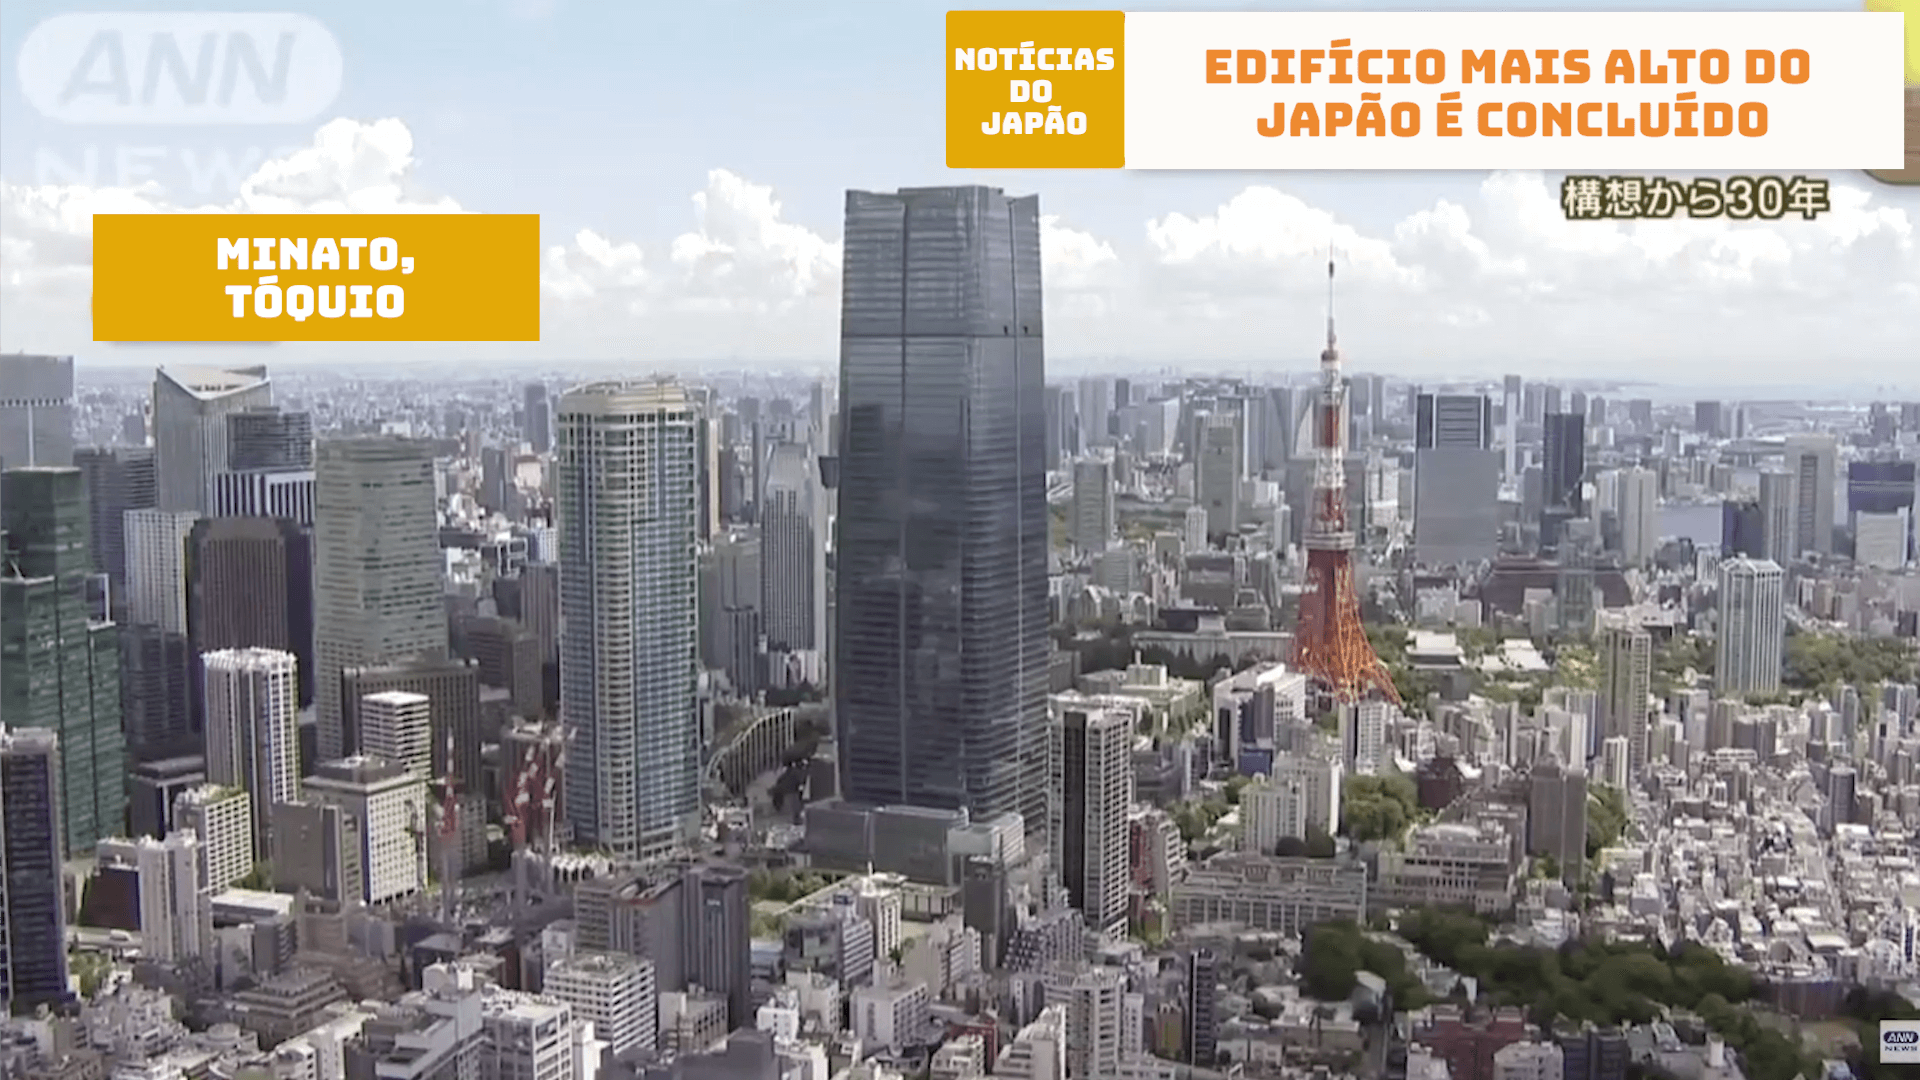 Edifício mais alto do Japão é concluído